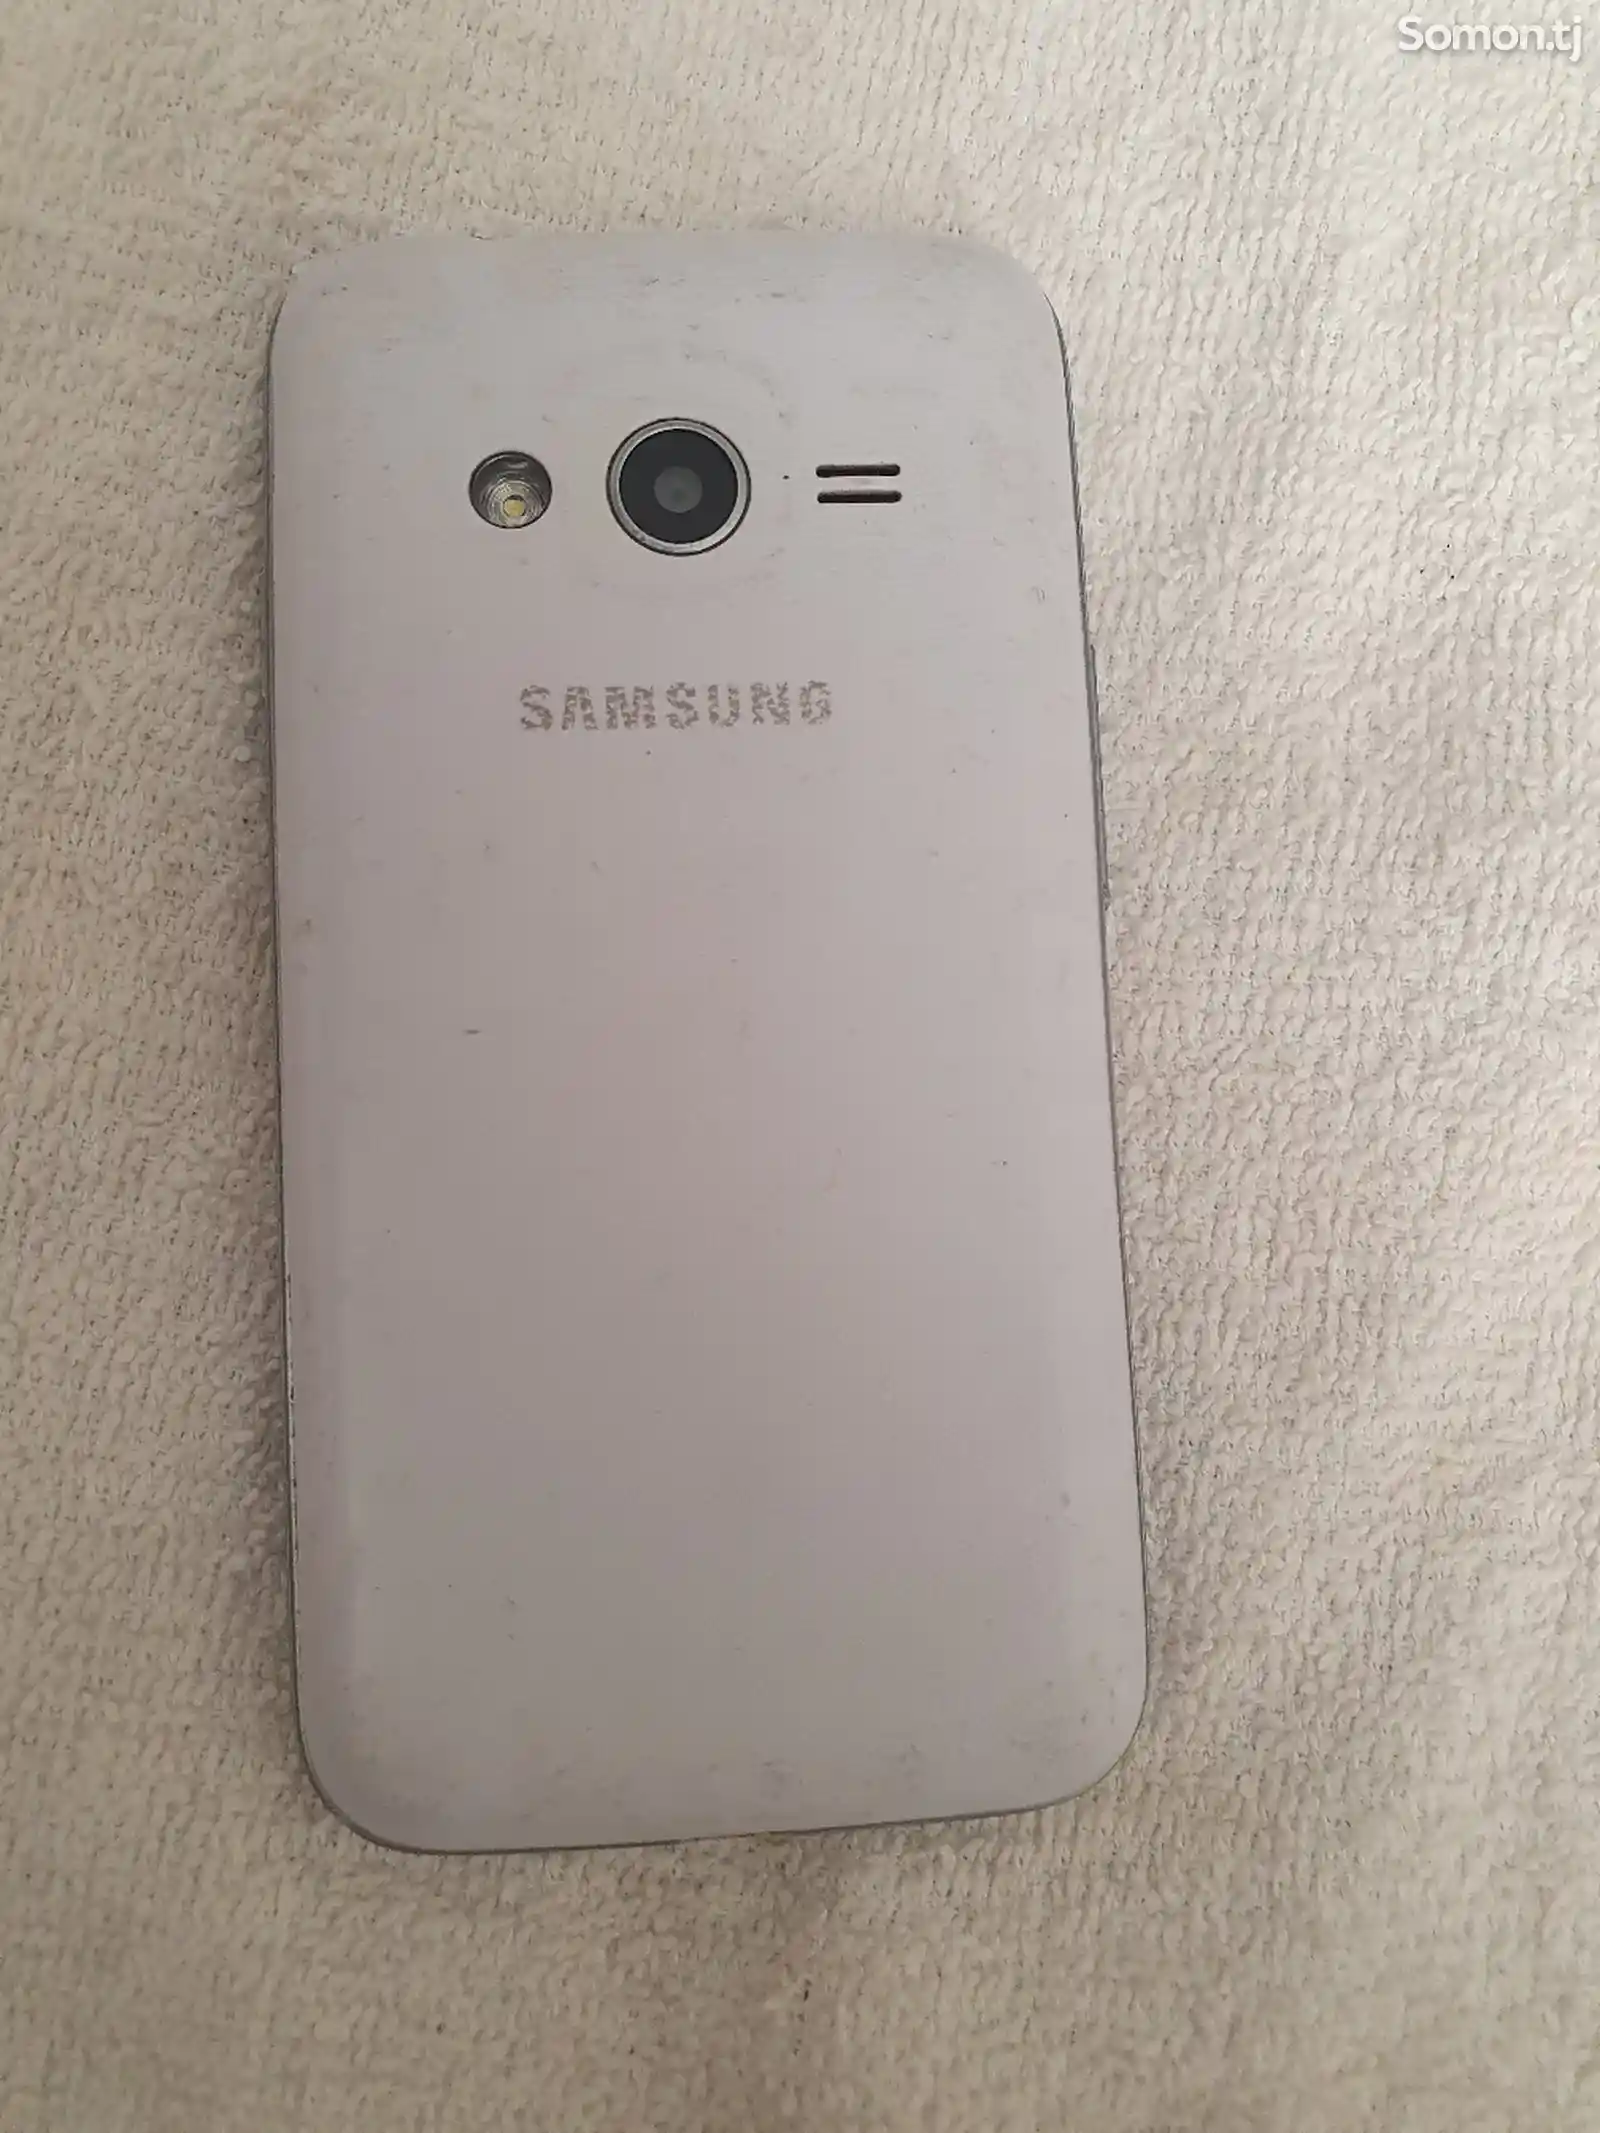 Samsung Galaxy Ice 4-6